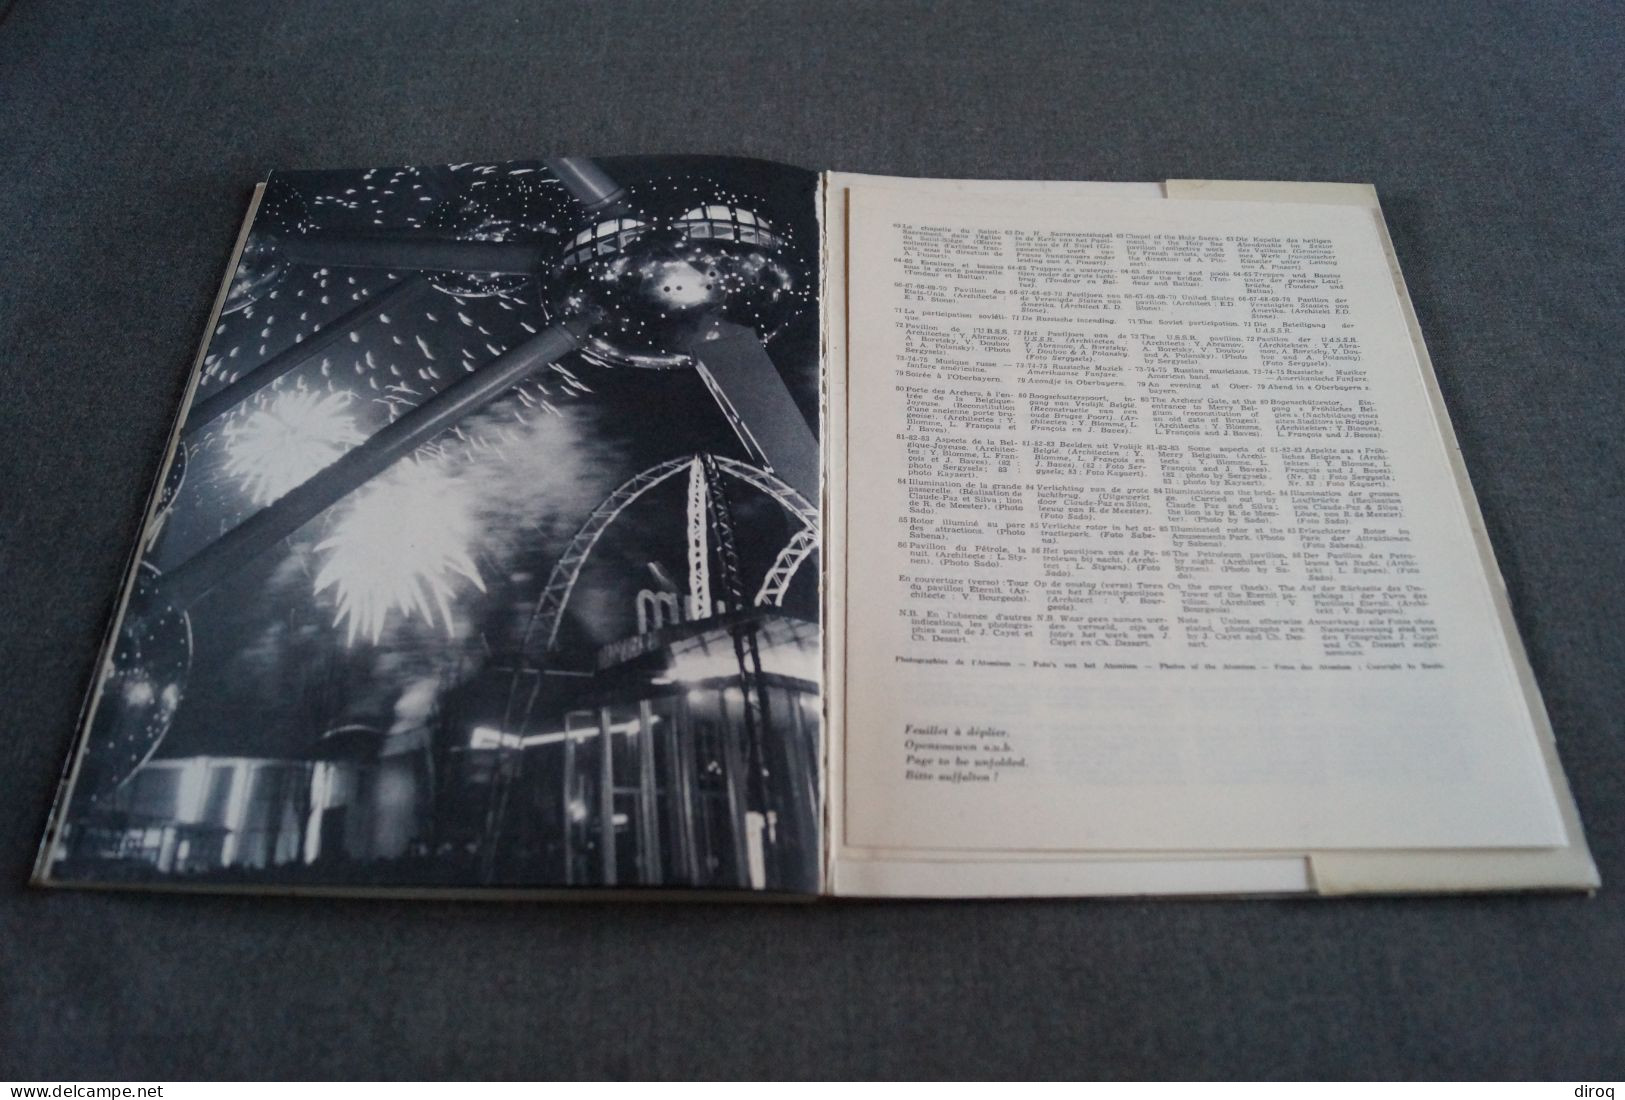 Images de l' Expo 58, Bruxelles - Edition Charles Dessart,87 pages,27 Cm. sur 21 Cm